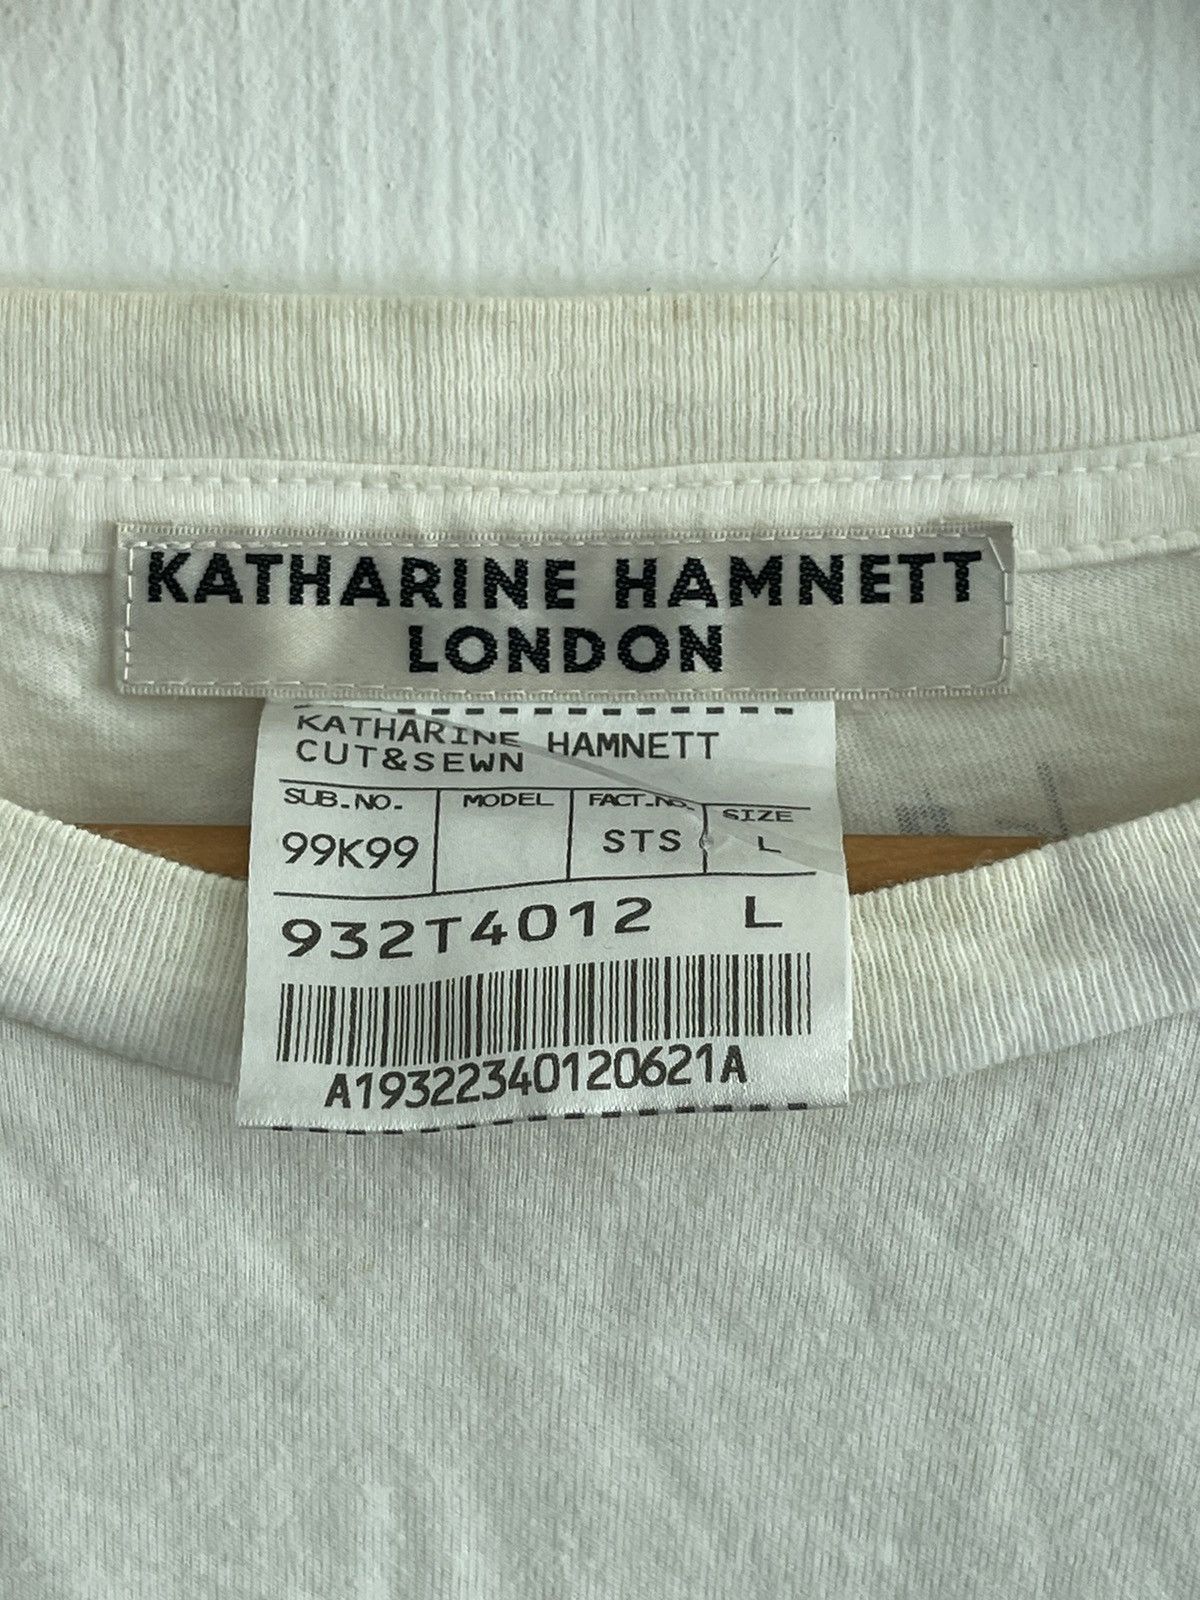 Katharine Hamnett London - Khatarine Hamnett London Joey Ramones Photo Tee - 3